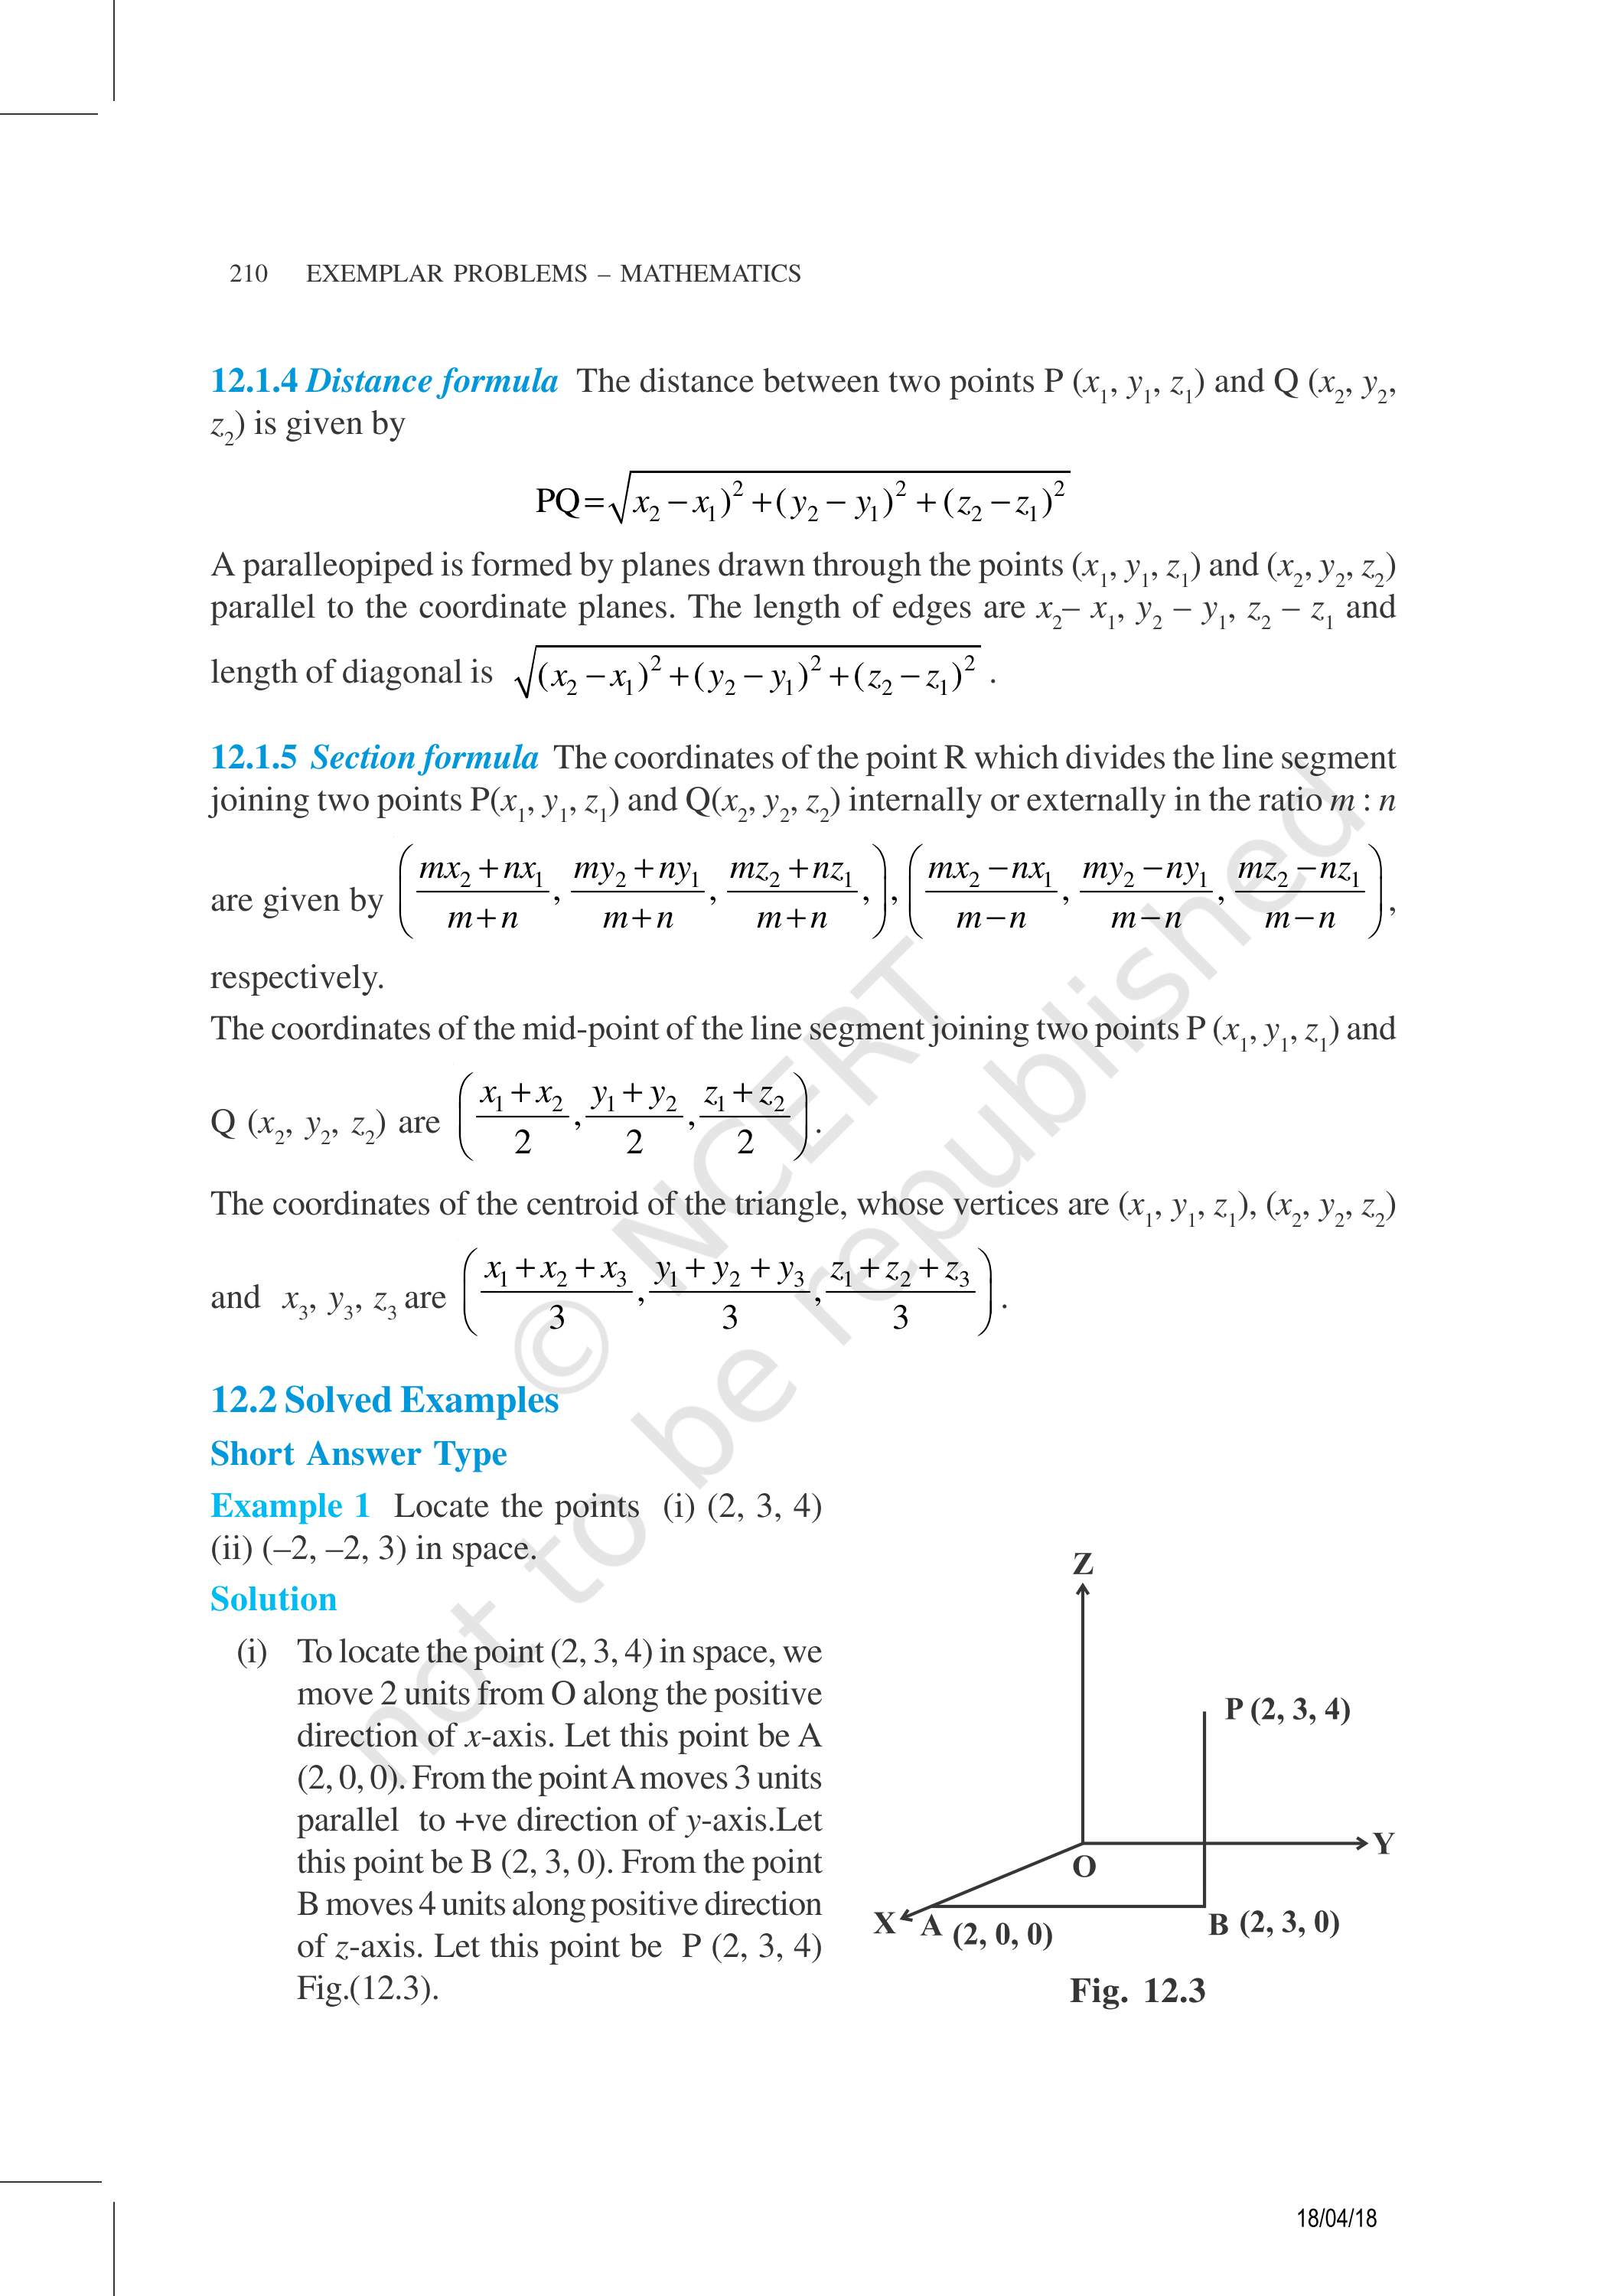 NCERT Exemplar Class 11 Maths Chapter 12 Image 3